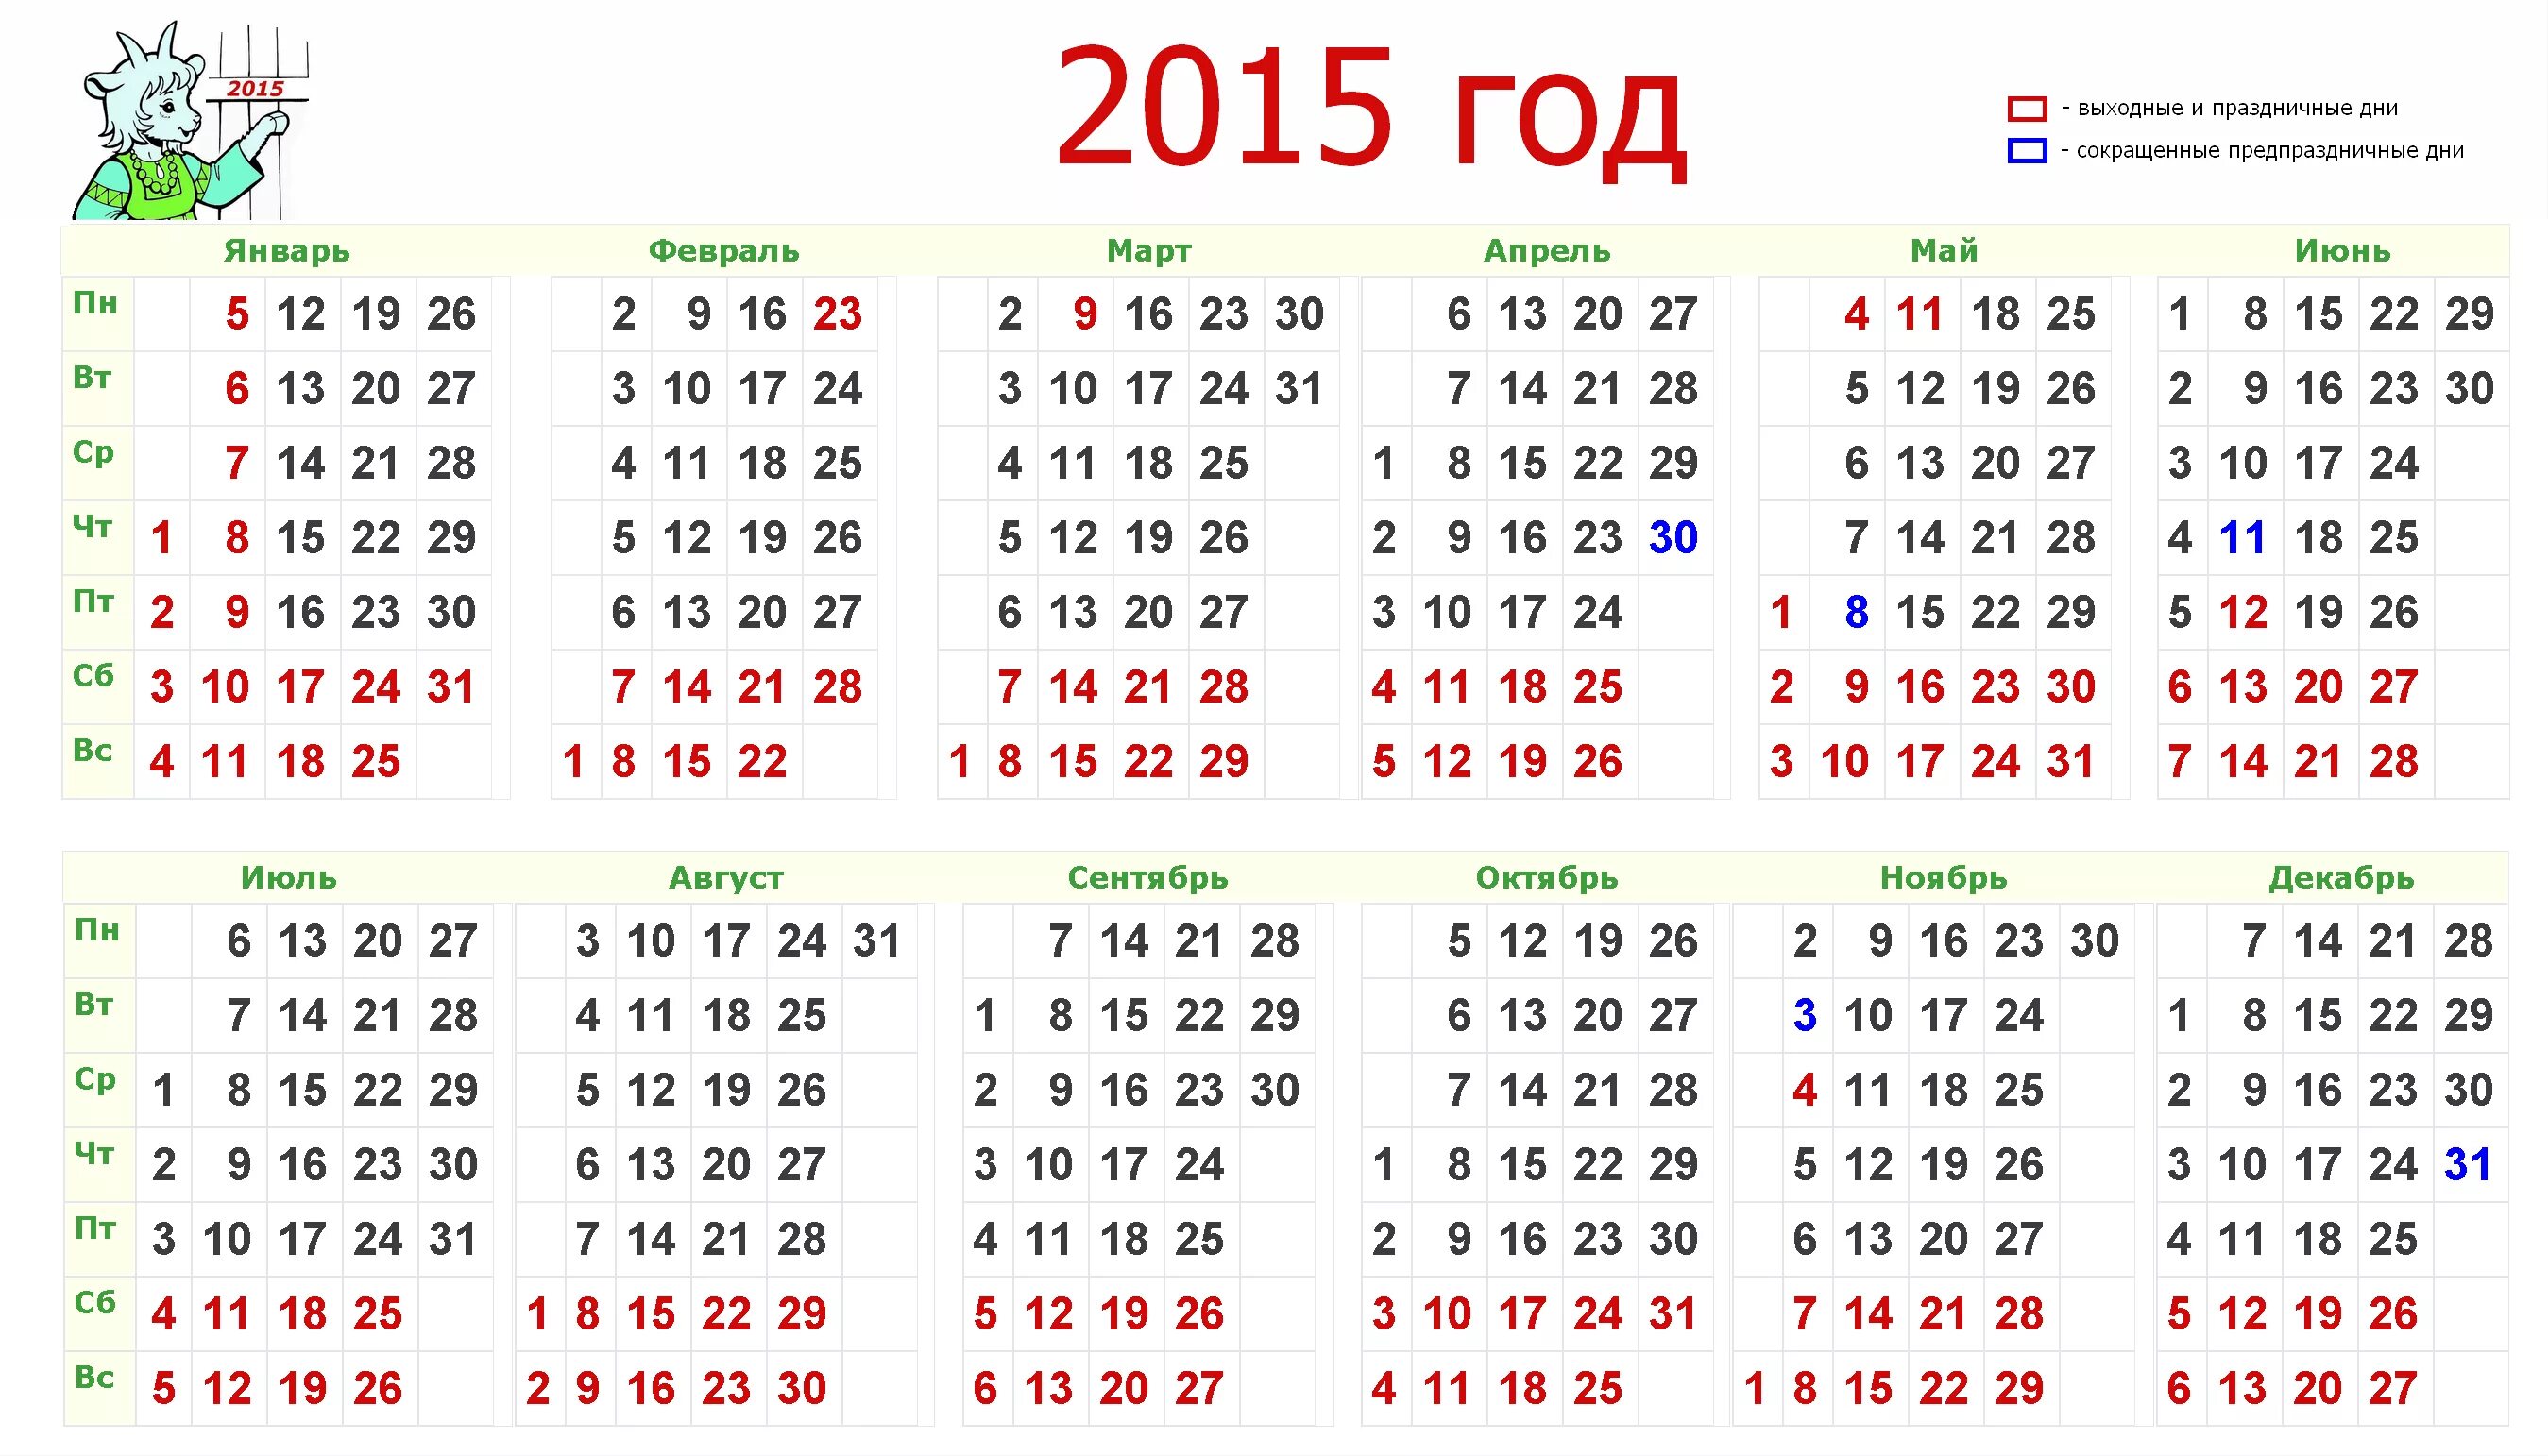 2015 б г. Календарь 2015г. Календарь 2015 года по месяцам. Календарь за 2015 год с выходными и праздниками. Календарь 2015г.по месяцам с праздничными и выходными днями.